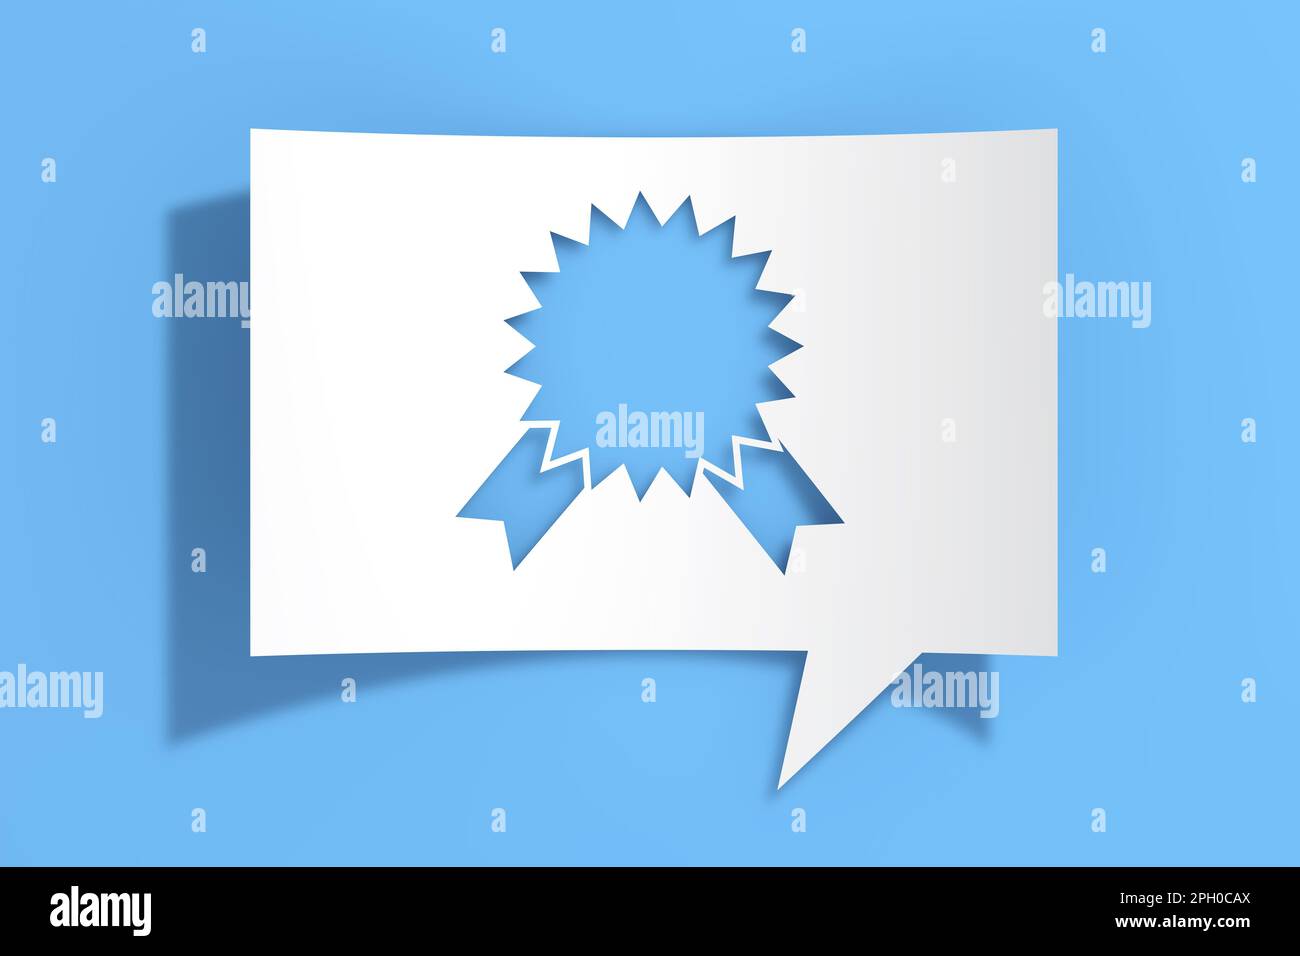 Farbband Rosette Symbol auf Ausschnitt Whitepaper Sprechblase auf blauem Hintergrund. 3D-Rendering Stockfoto